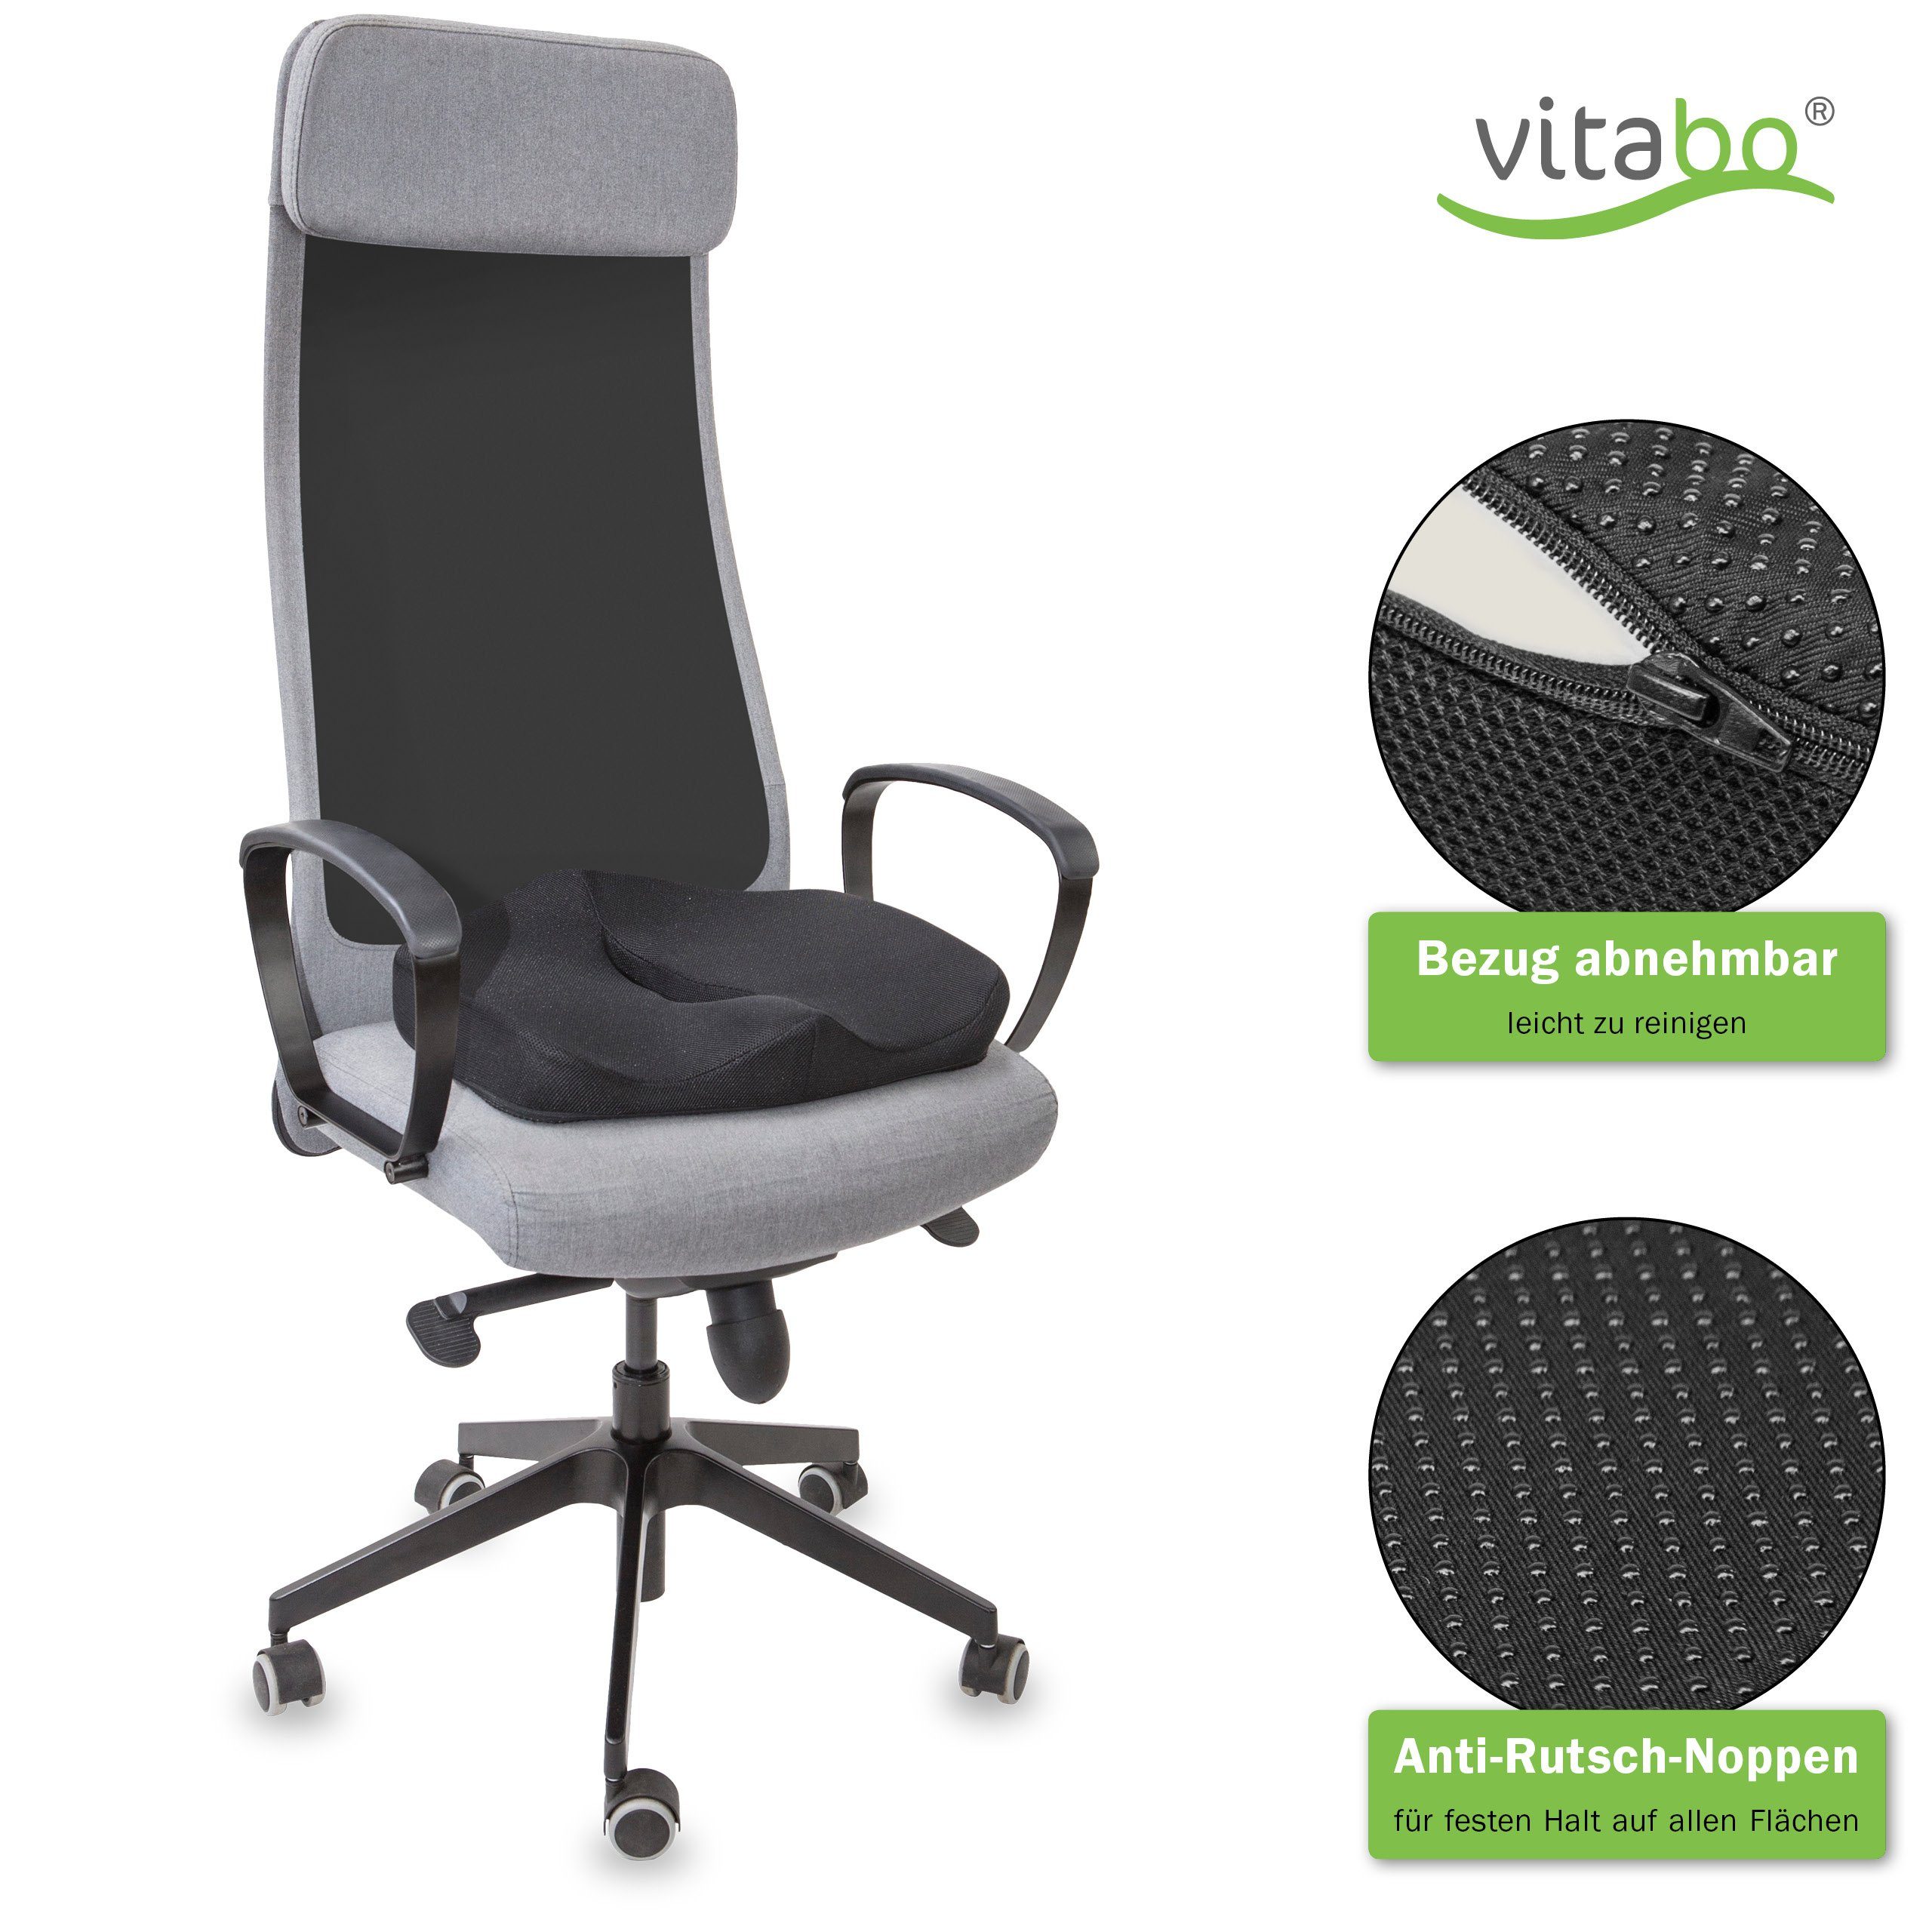 Sitzkissen aus Viscoschaum SK-U0120 für eine ergonomische Sitzhaltung